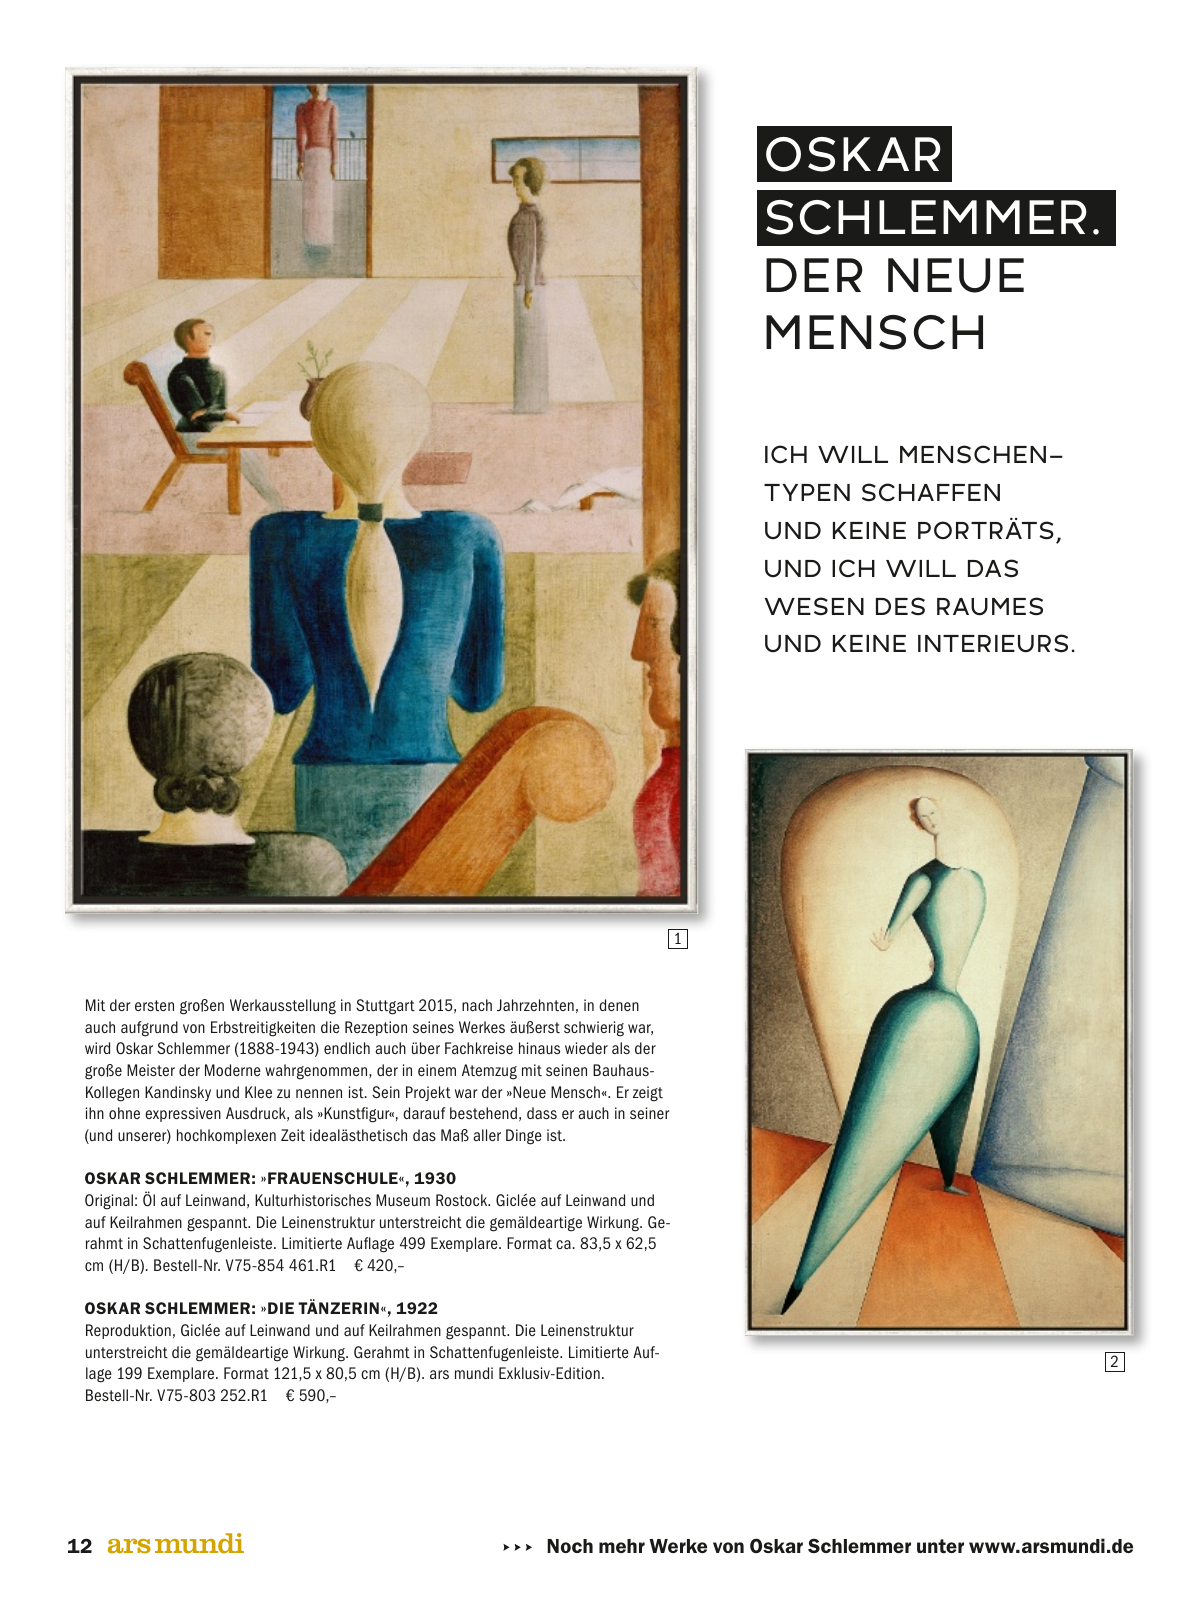 Vorschau ars mundi Kunstkatalog Sommer 2017 Seite 12